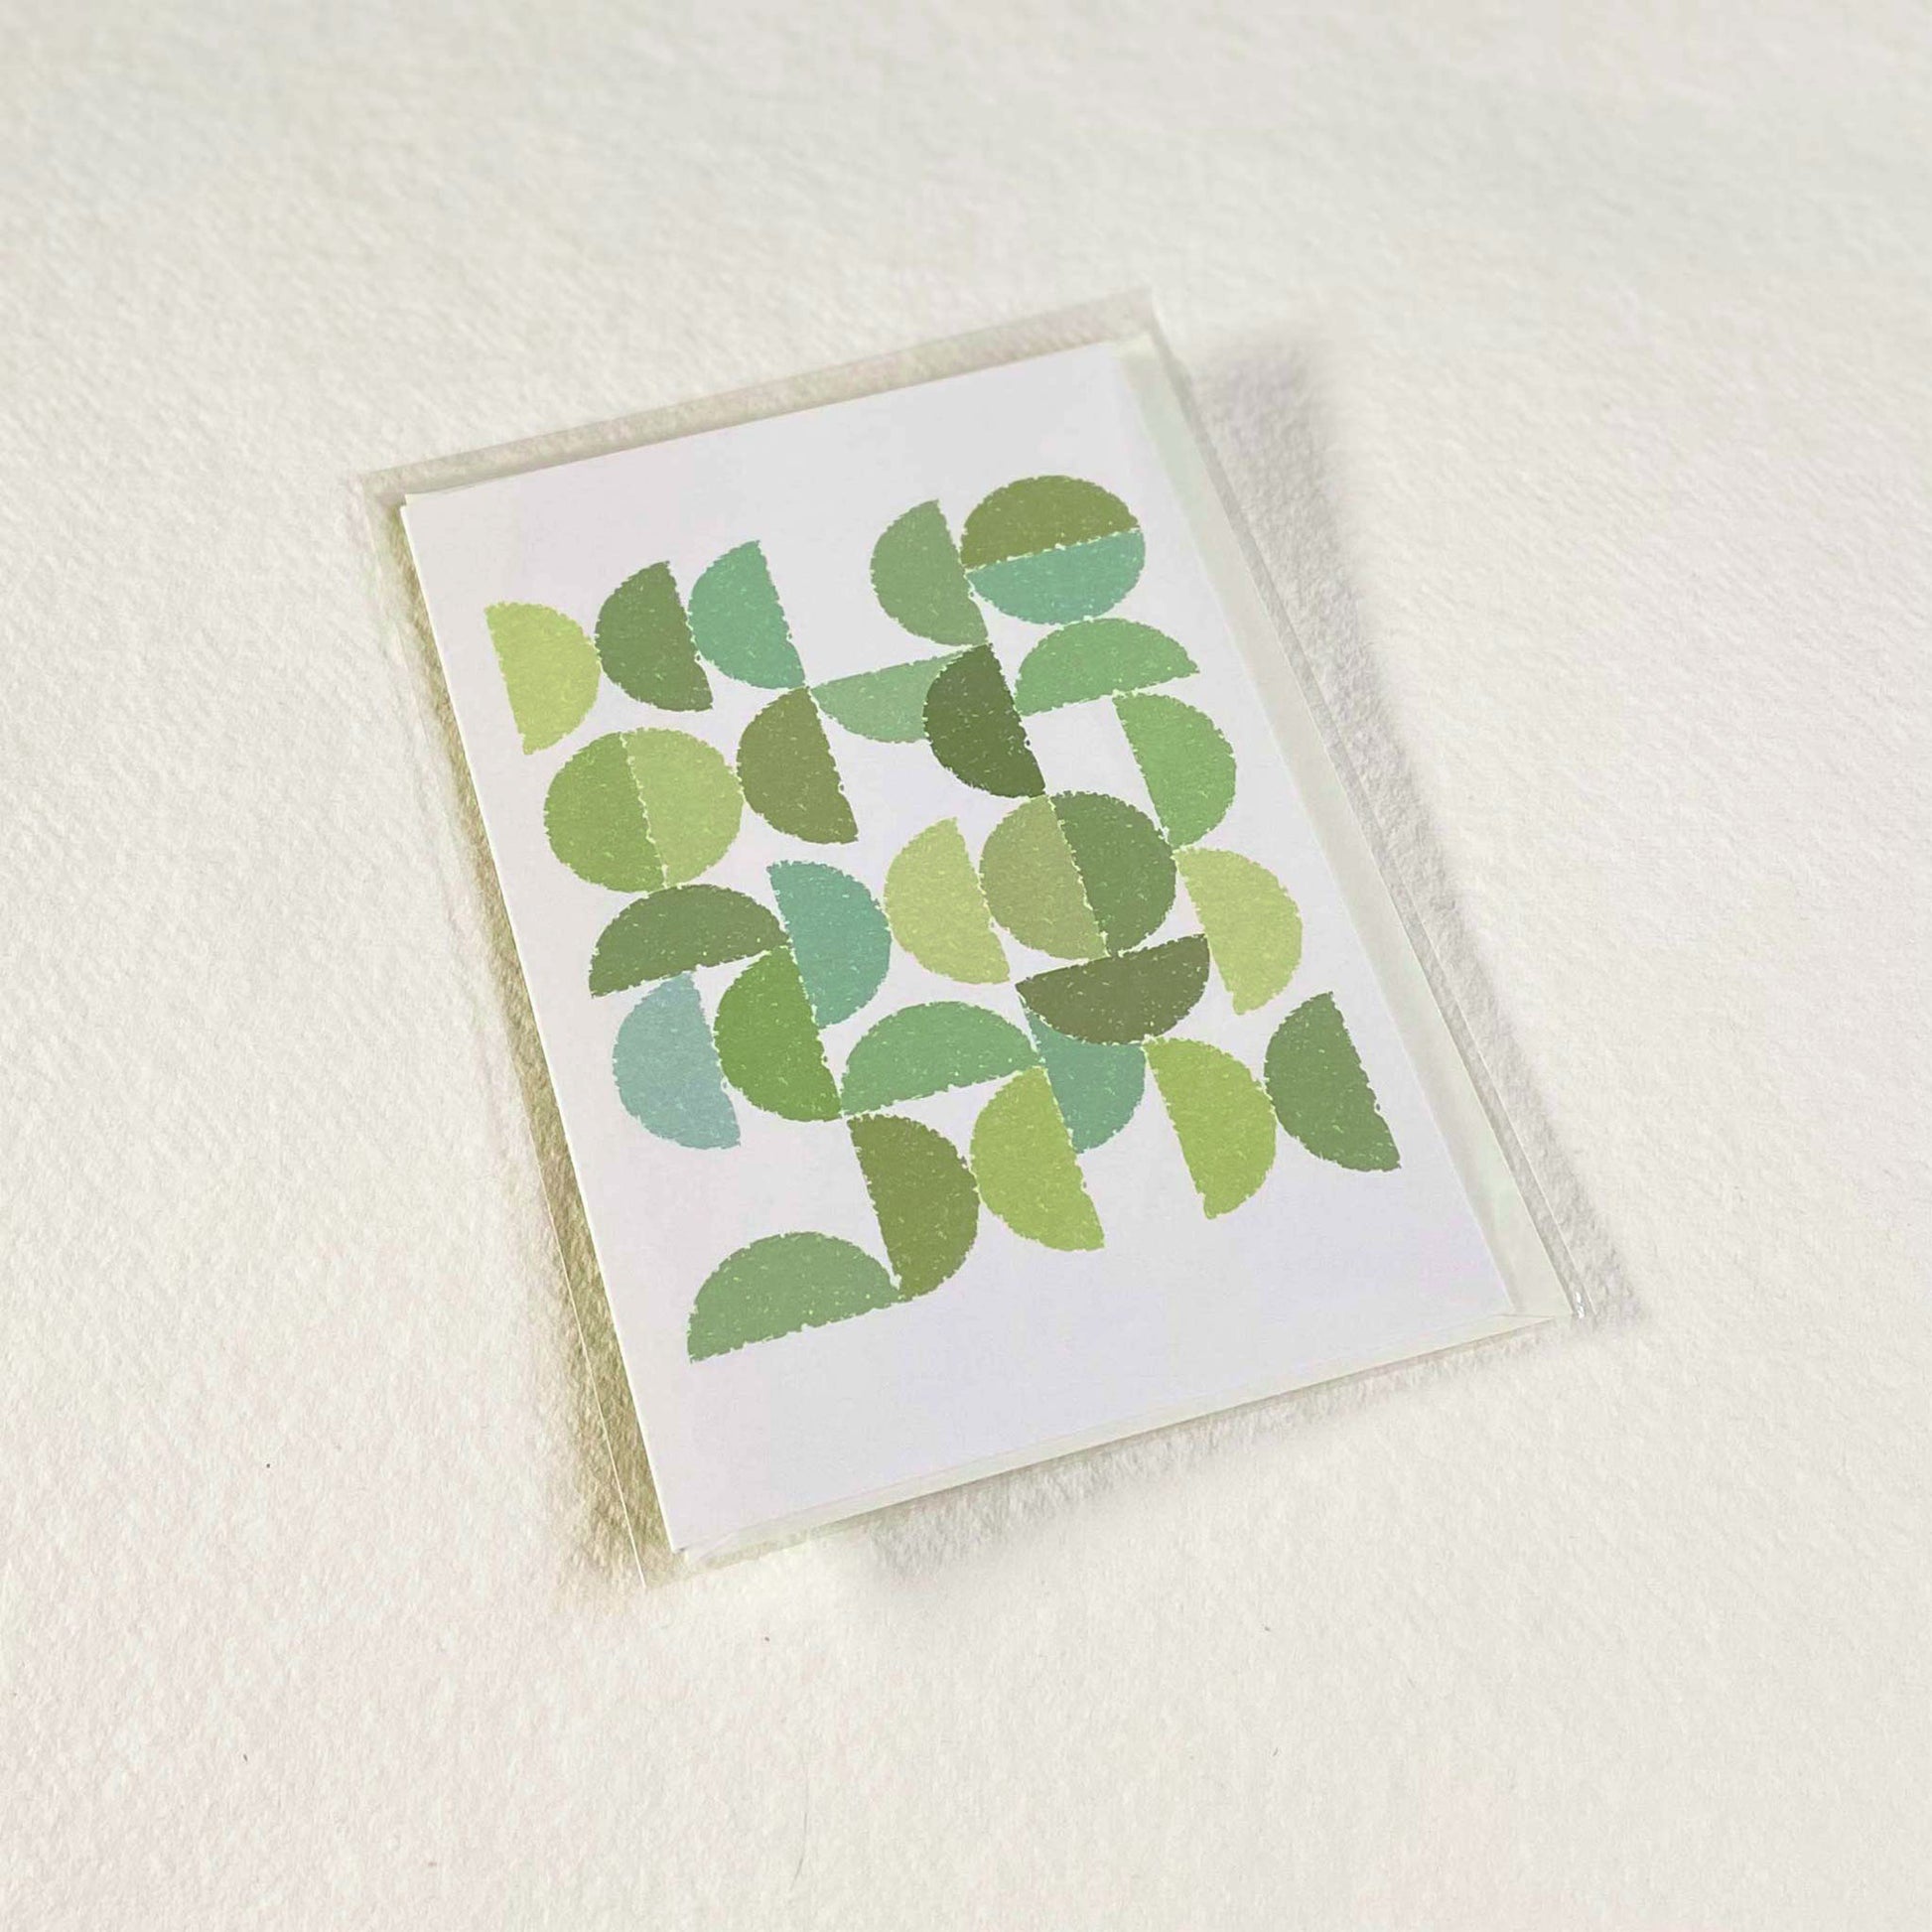 Productafbeelding foto wenskaart "ronde kleuren naar bladgroen" in verpakking